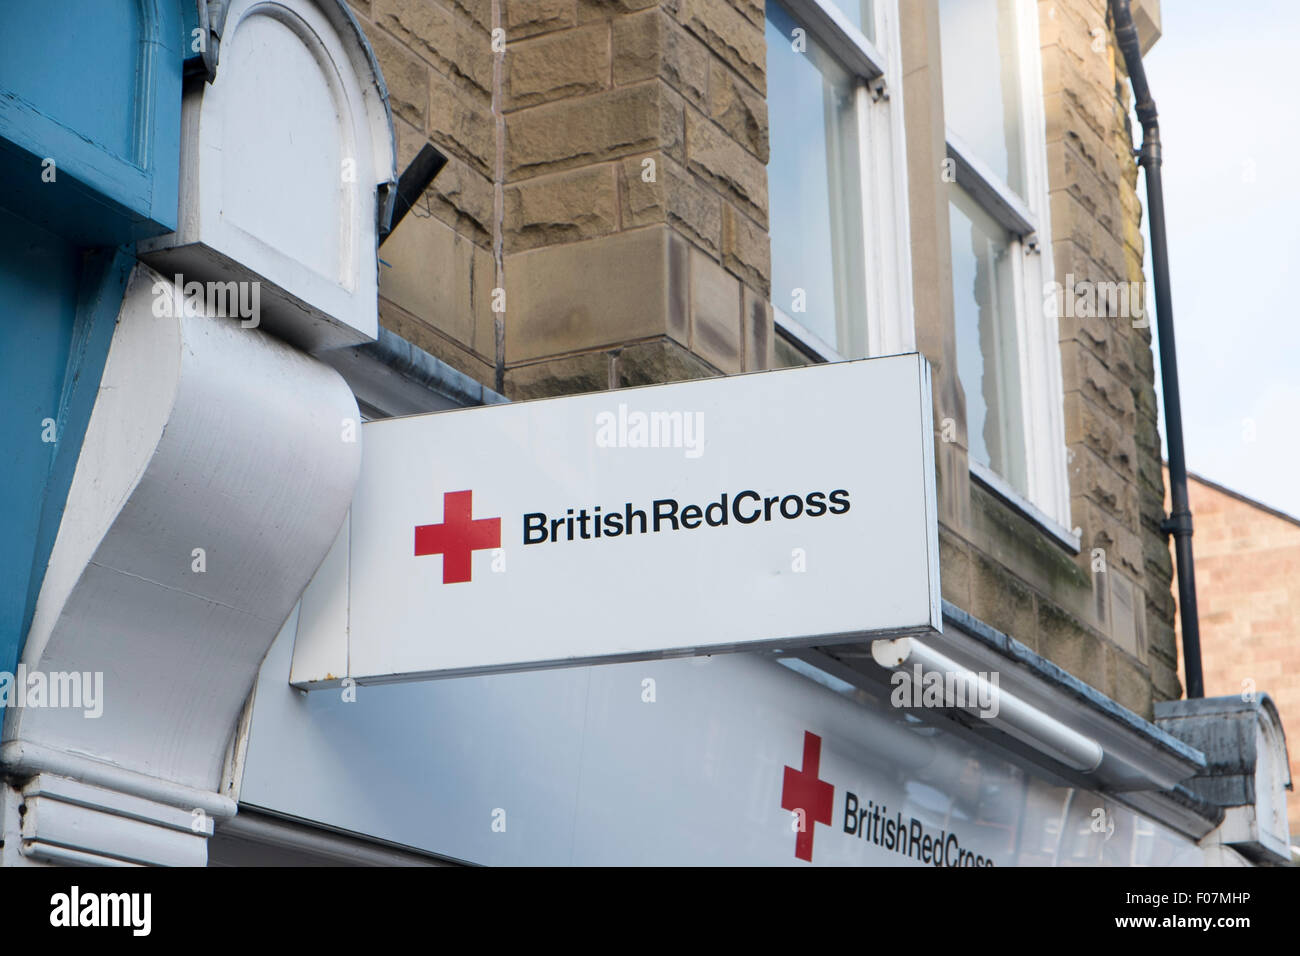 Magasin de croix rouge britannique dans la ville de Matlock, dans le Derbyshire, Angleterre, Royaume-Uni Banque D'Images